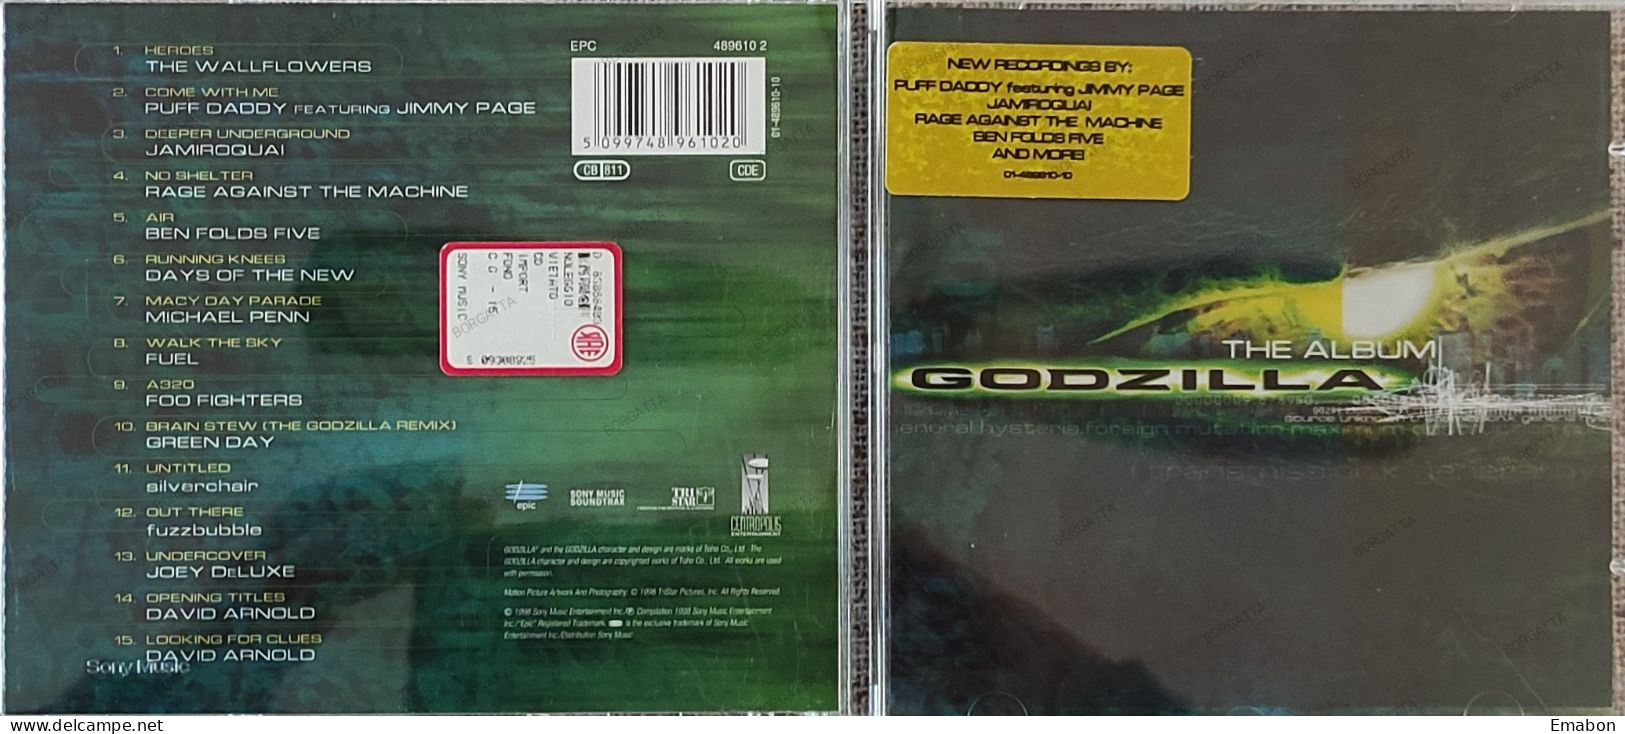 BORGATTA - FILM MUSIC  - Cd   THE ALBUM GODZILLA - EPIC/SONY 1998- USATO In Buono Stato - Musica Di Film